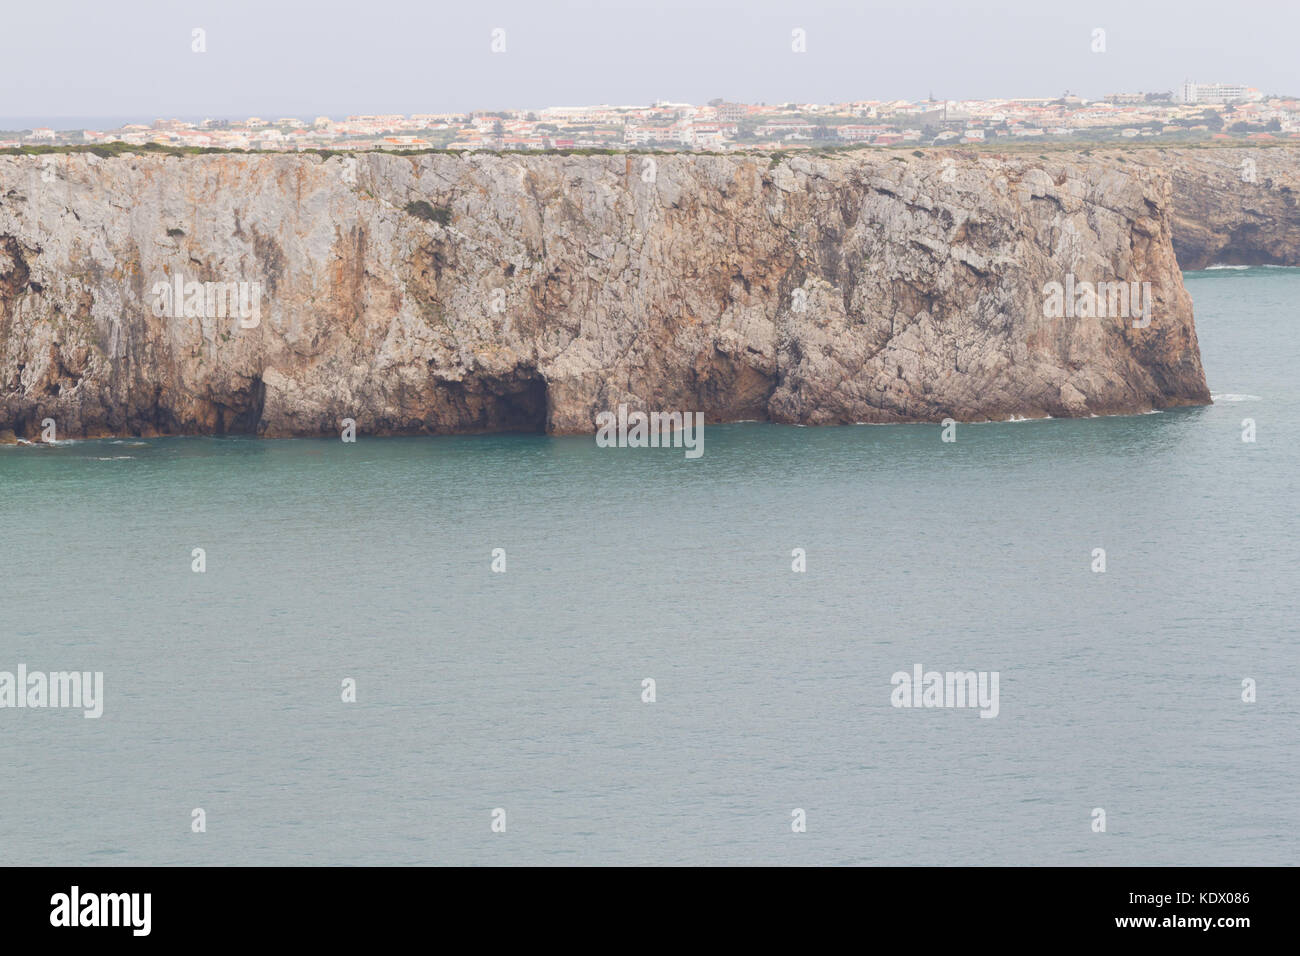 Cliffs and Sagre village  in Cabo de Sao Vicente, Sagres, Algarve, Portugal Stock Photo